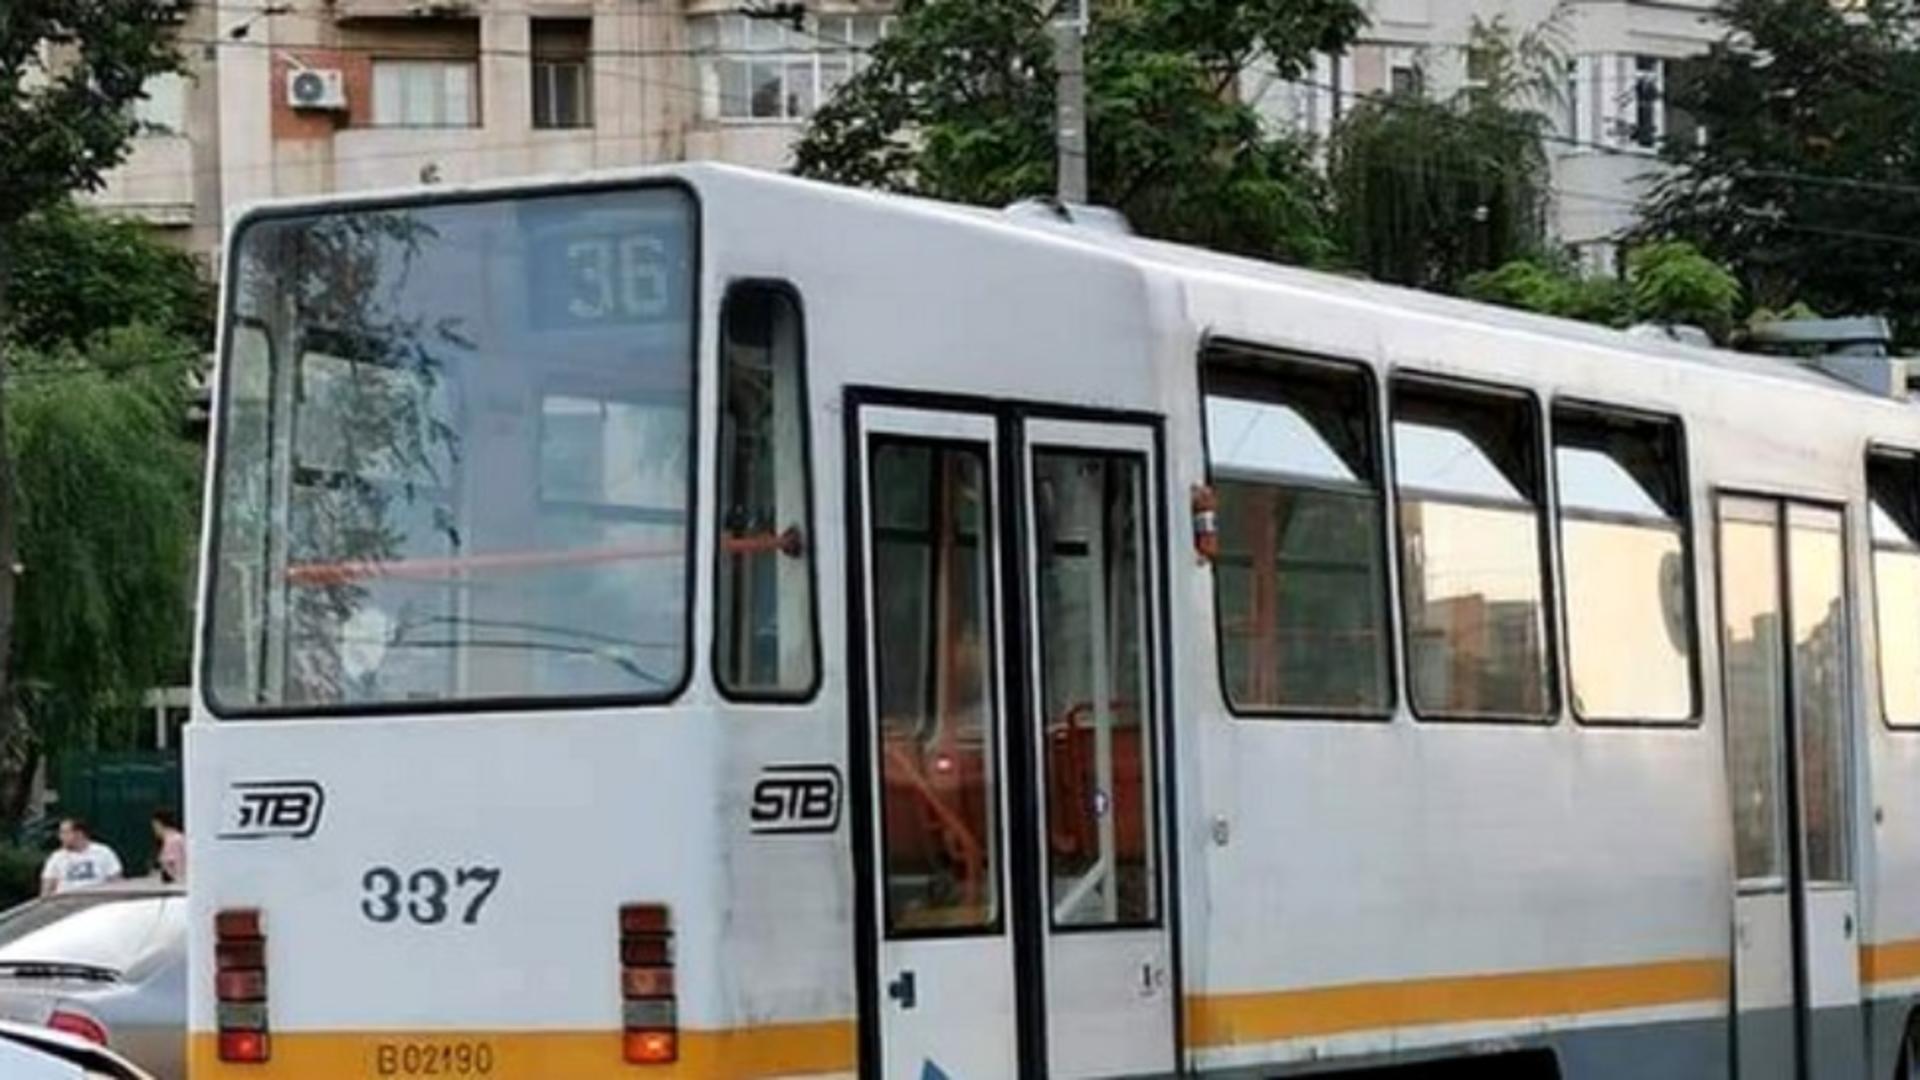 Tramvai deraiat în București – panică printre călători